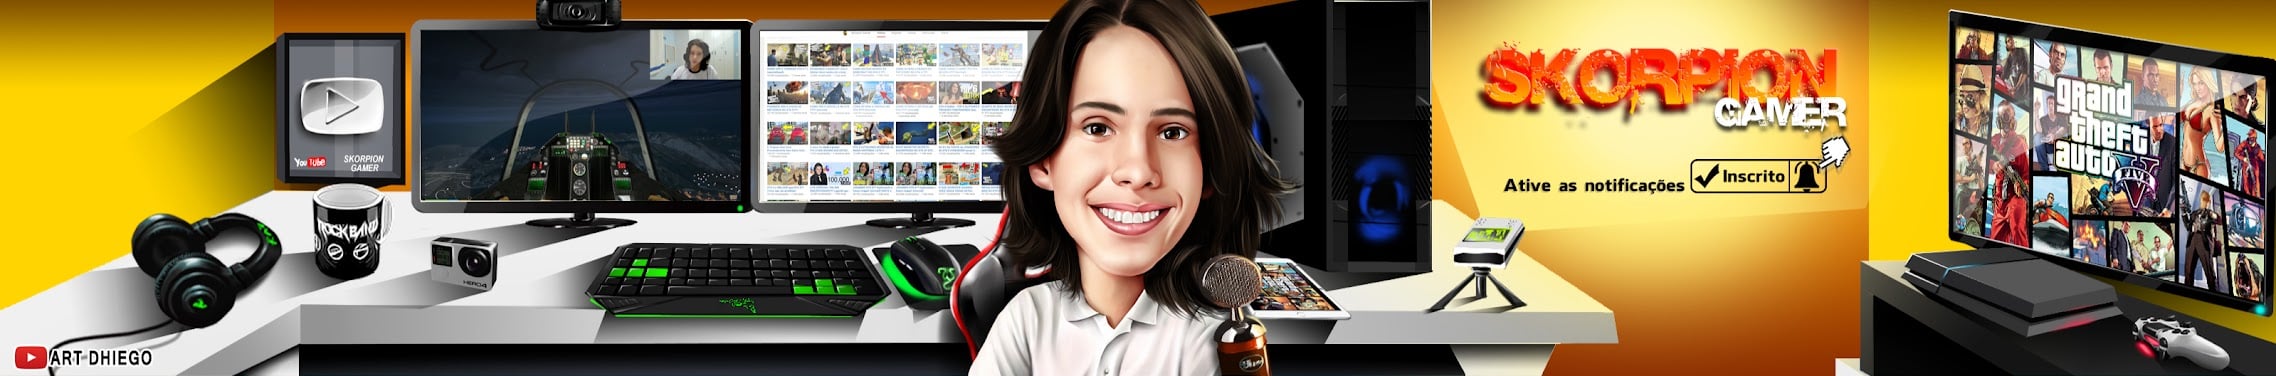 Youtuber brasileiro - Skorpion Gamer